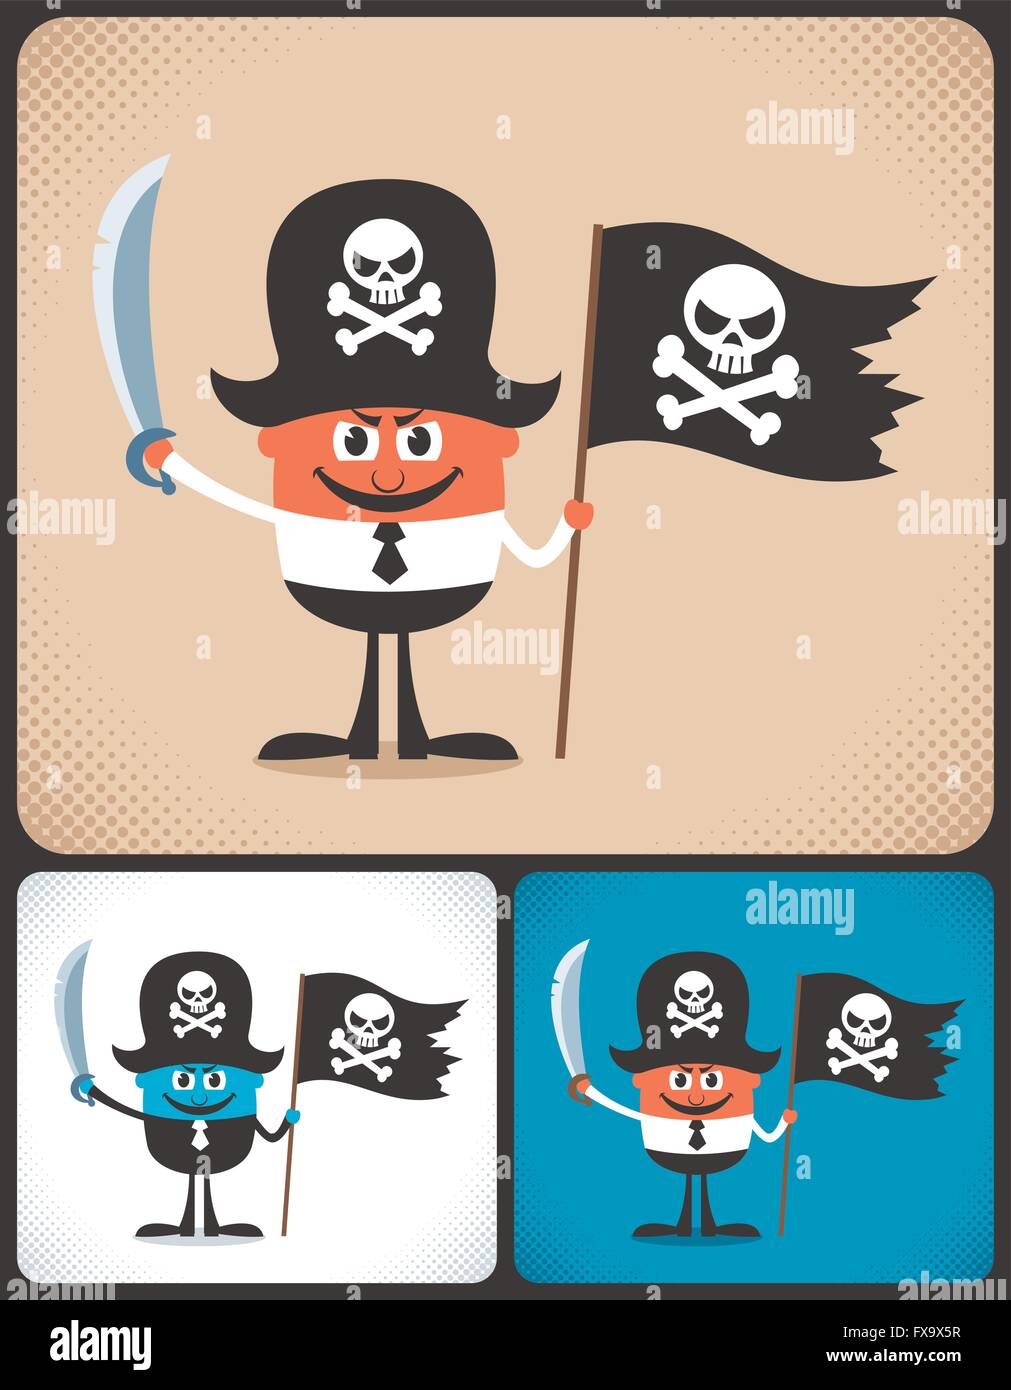 Illustrazione concettuale di imprenditore con accessori pirata. Illustrazione è in 3 versioni di colore. Illustrazione Vettoriale